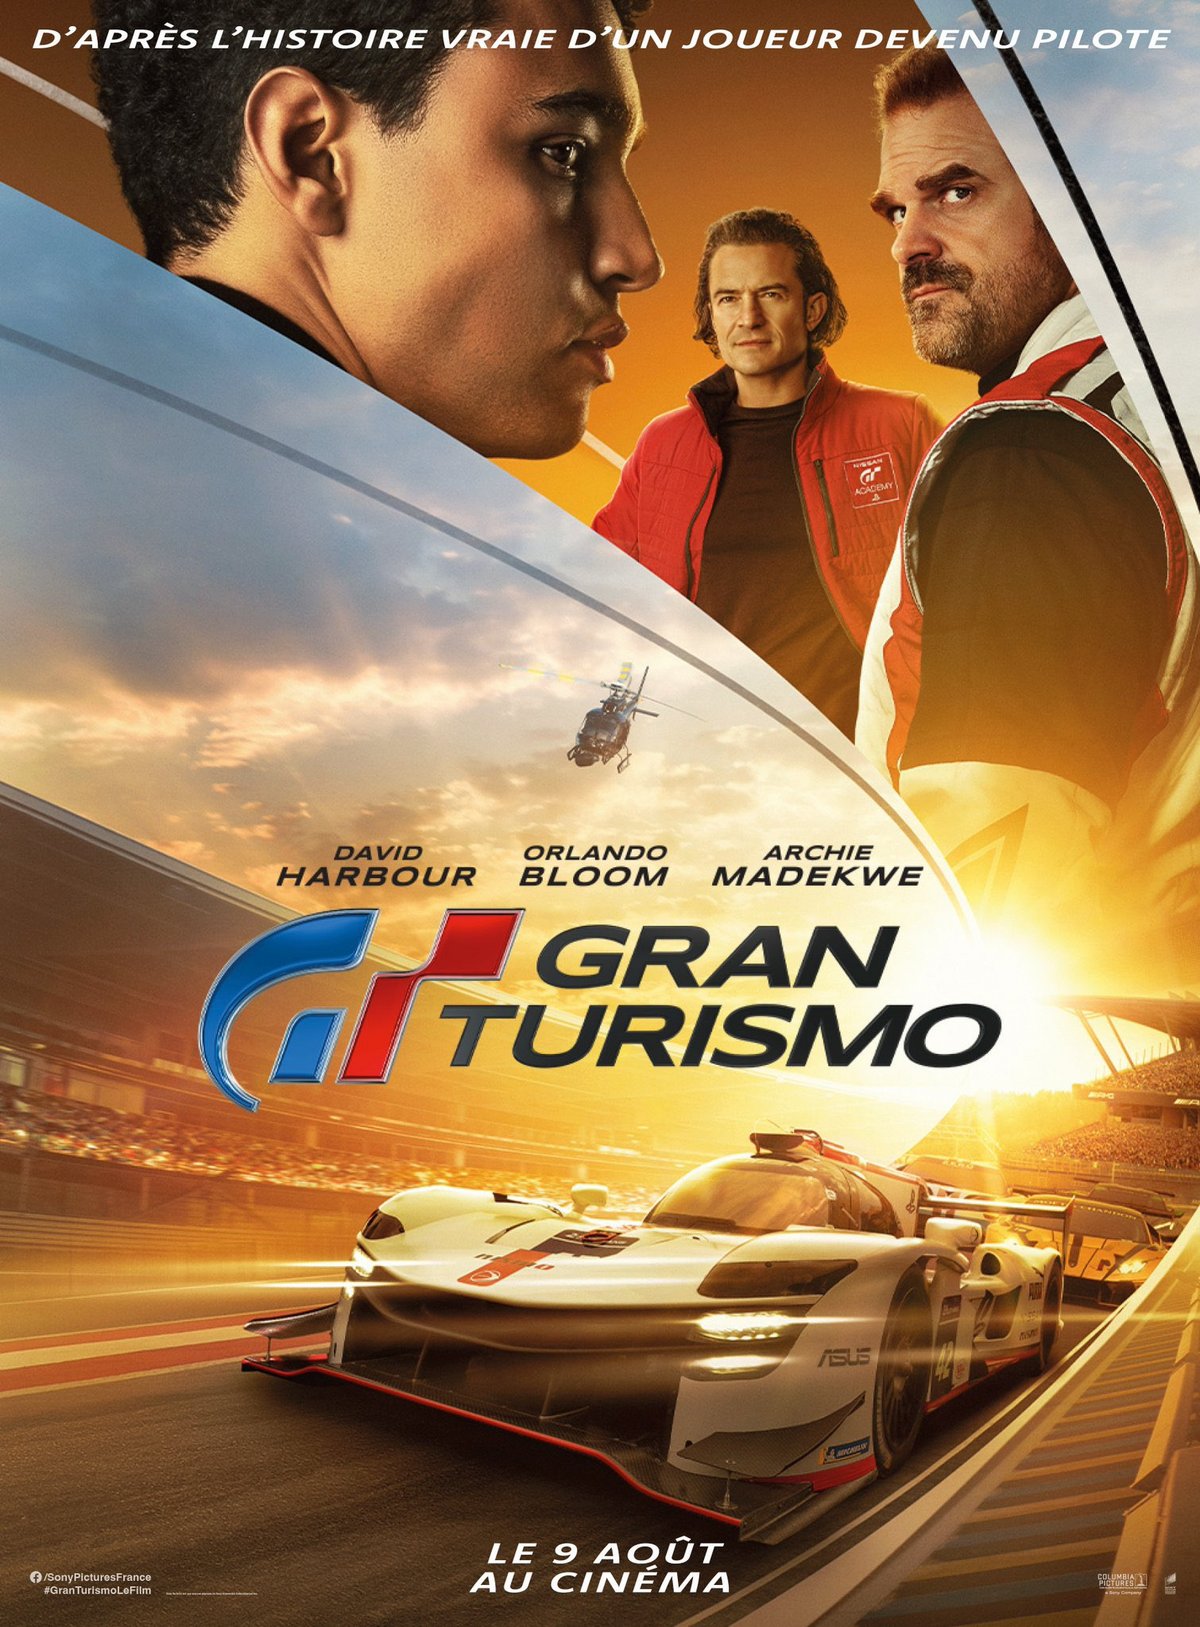 Gran Turismo : la bande-annonce du film est enfin sortie, et elle claque ! Par Stéphane Ficca  Raw?fit=max&width=1200&hash=a5e4597716f0d9318ac5f13fd32d150c2a473a2a